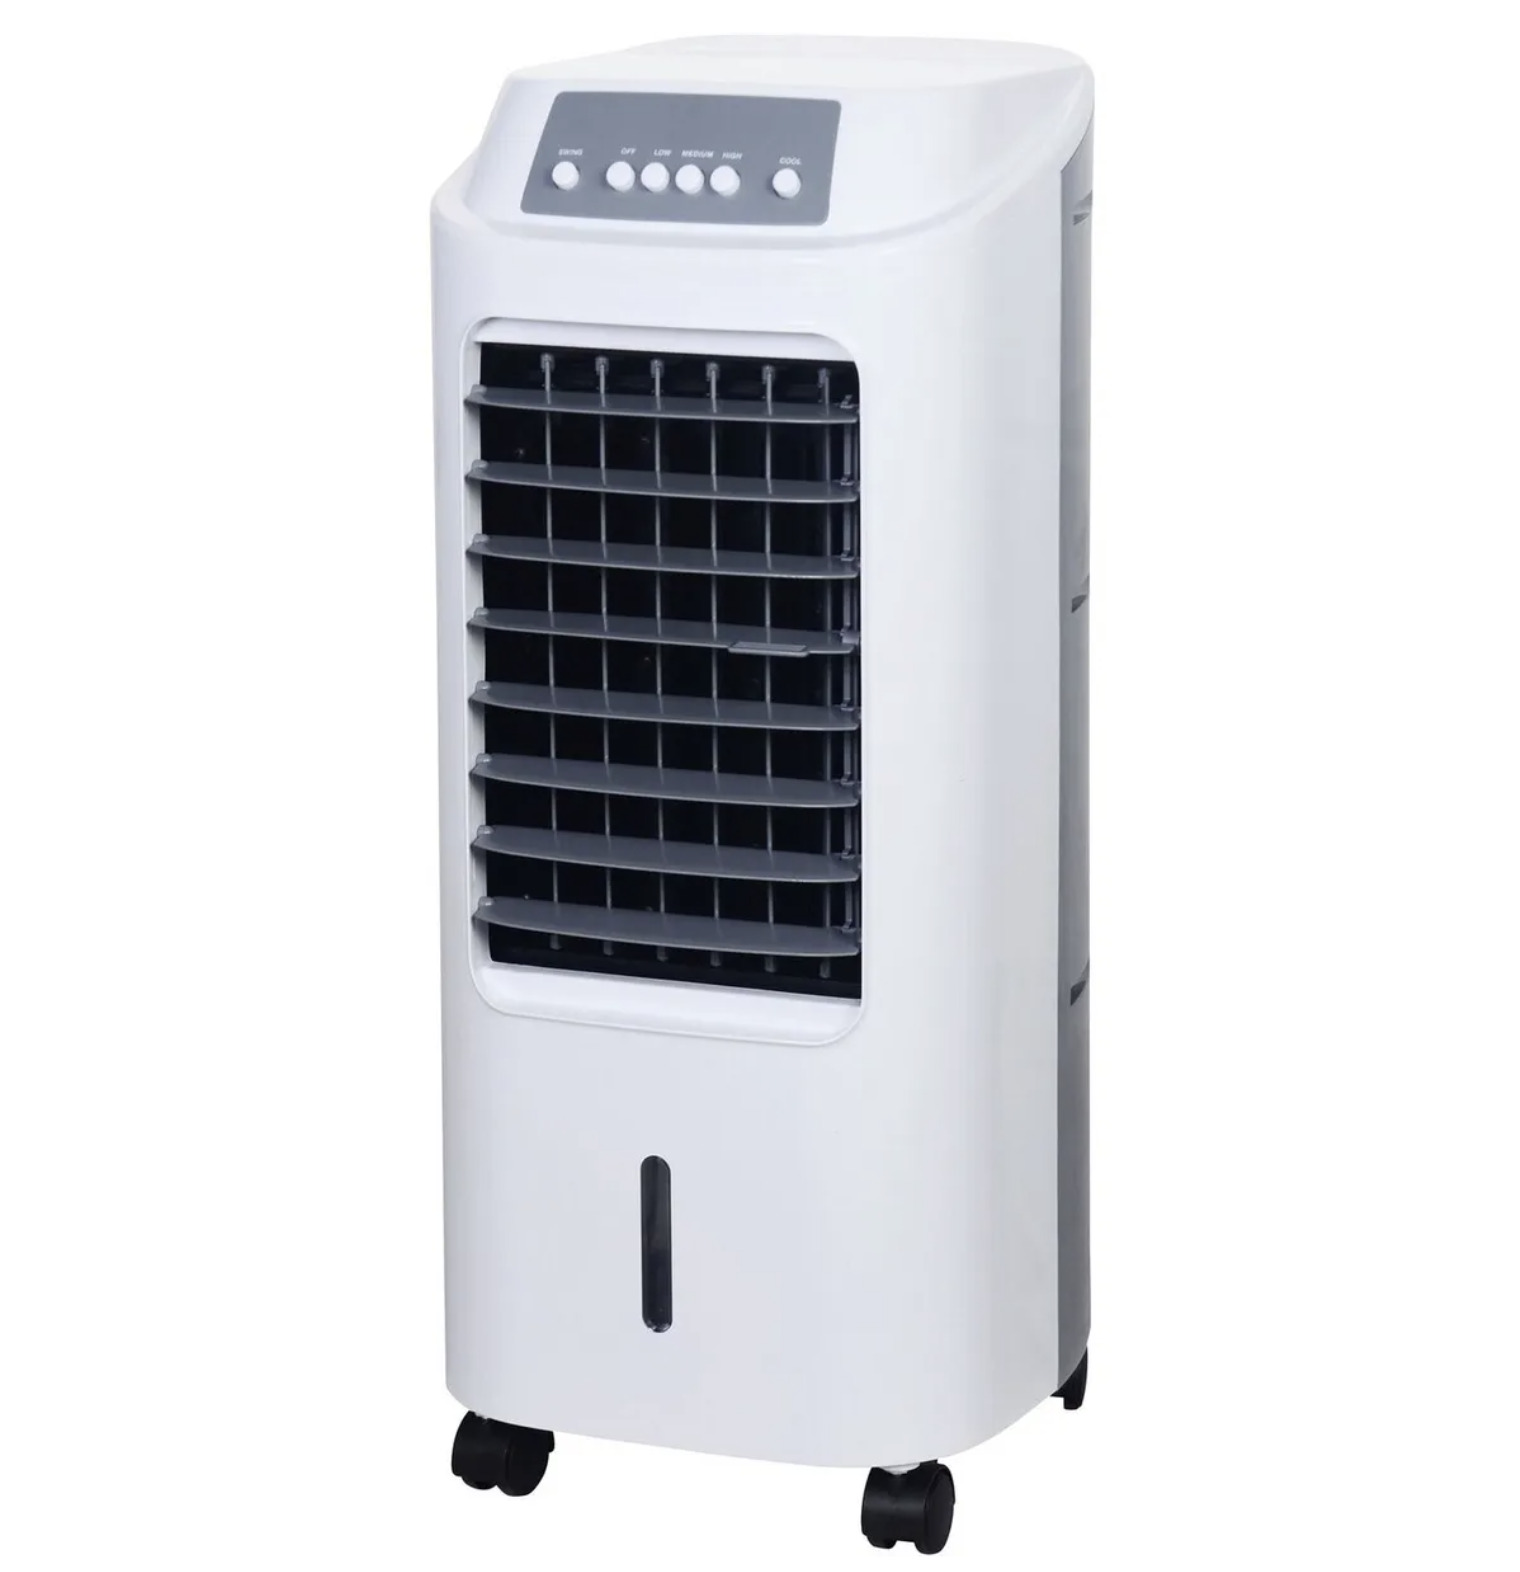 Охладитель воздуха напольный без воздуховода для дома. Охладитель воздуха Obi LK 65-73. Охладитель воздуха CMI lk65-60. Охладитель воздуха CMI lk65-60 65 Вт. Охладитель Obi 65w.